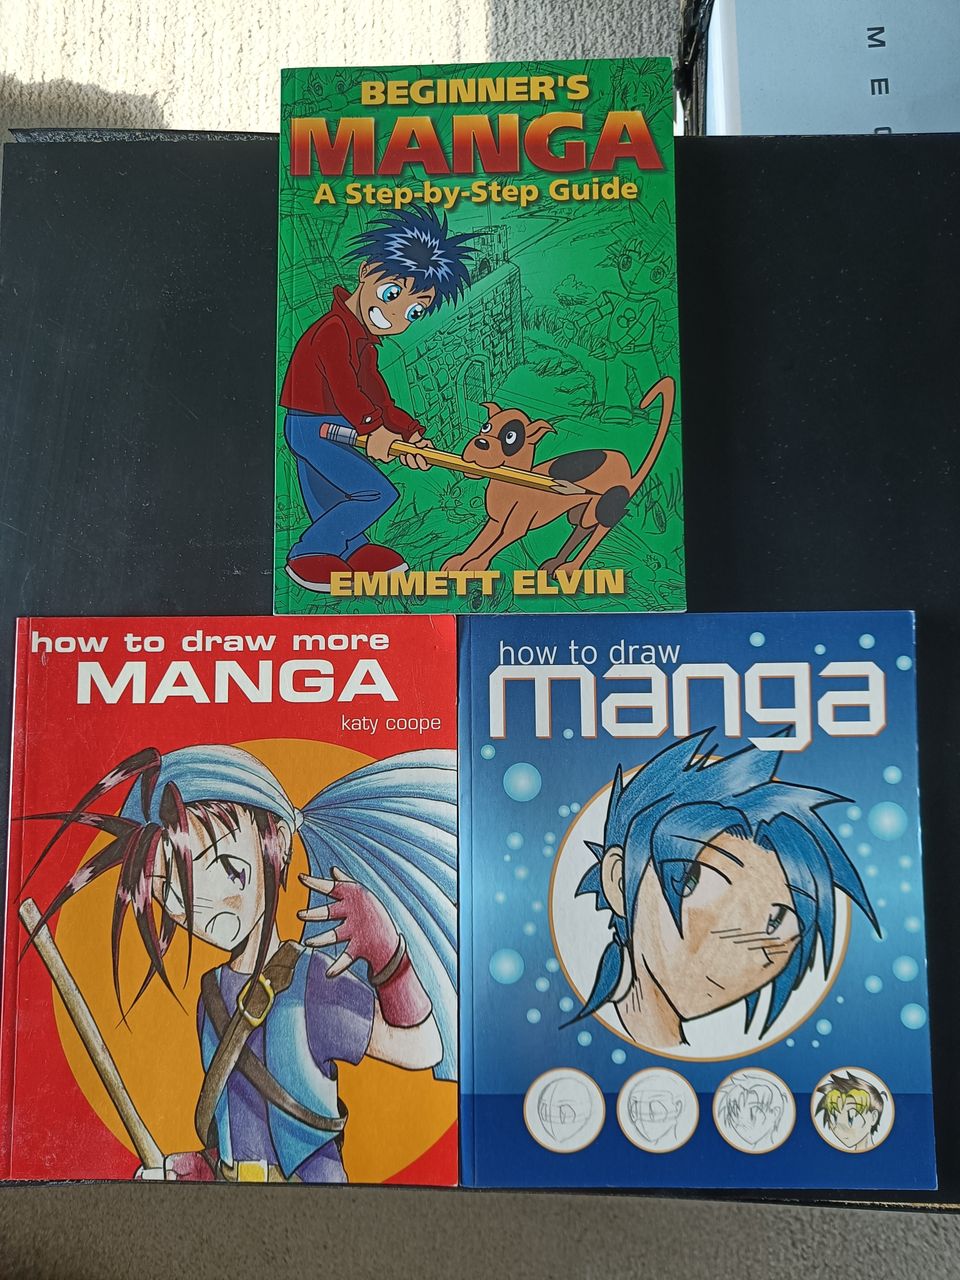 How to draw manga oppaita